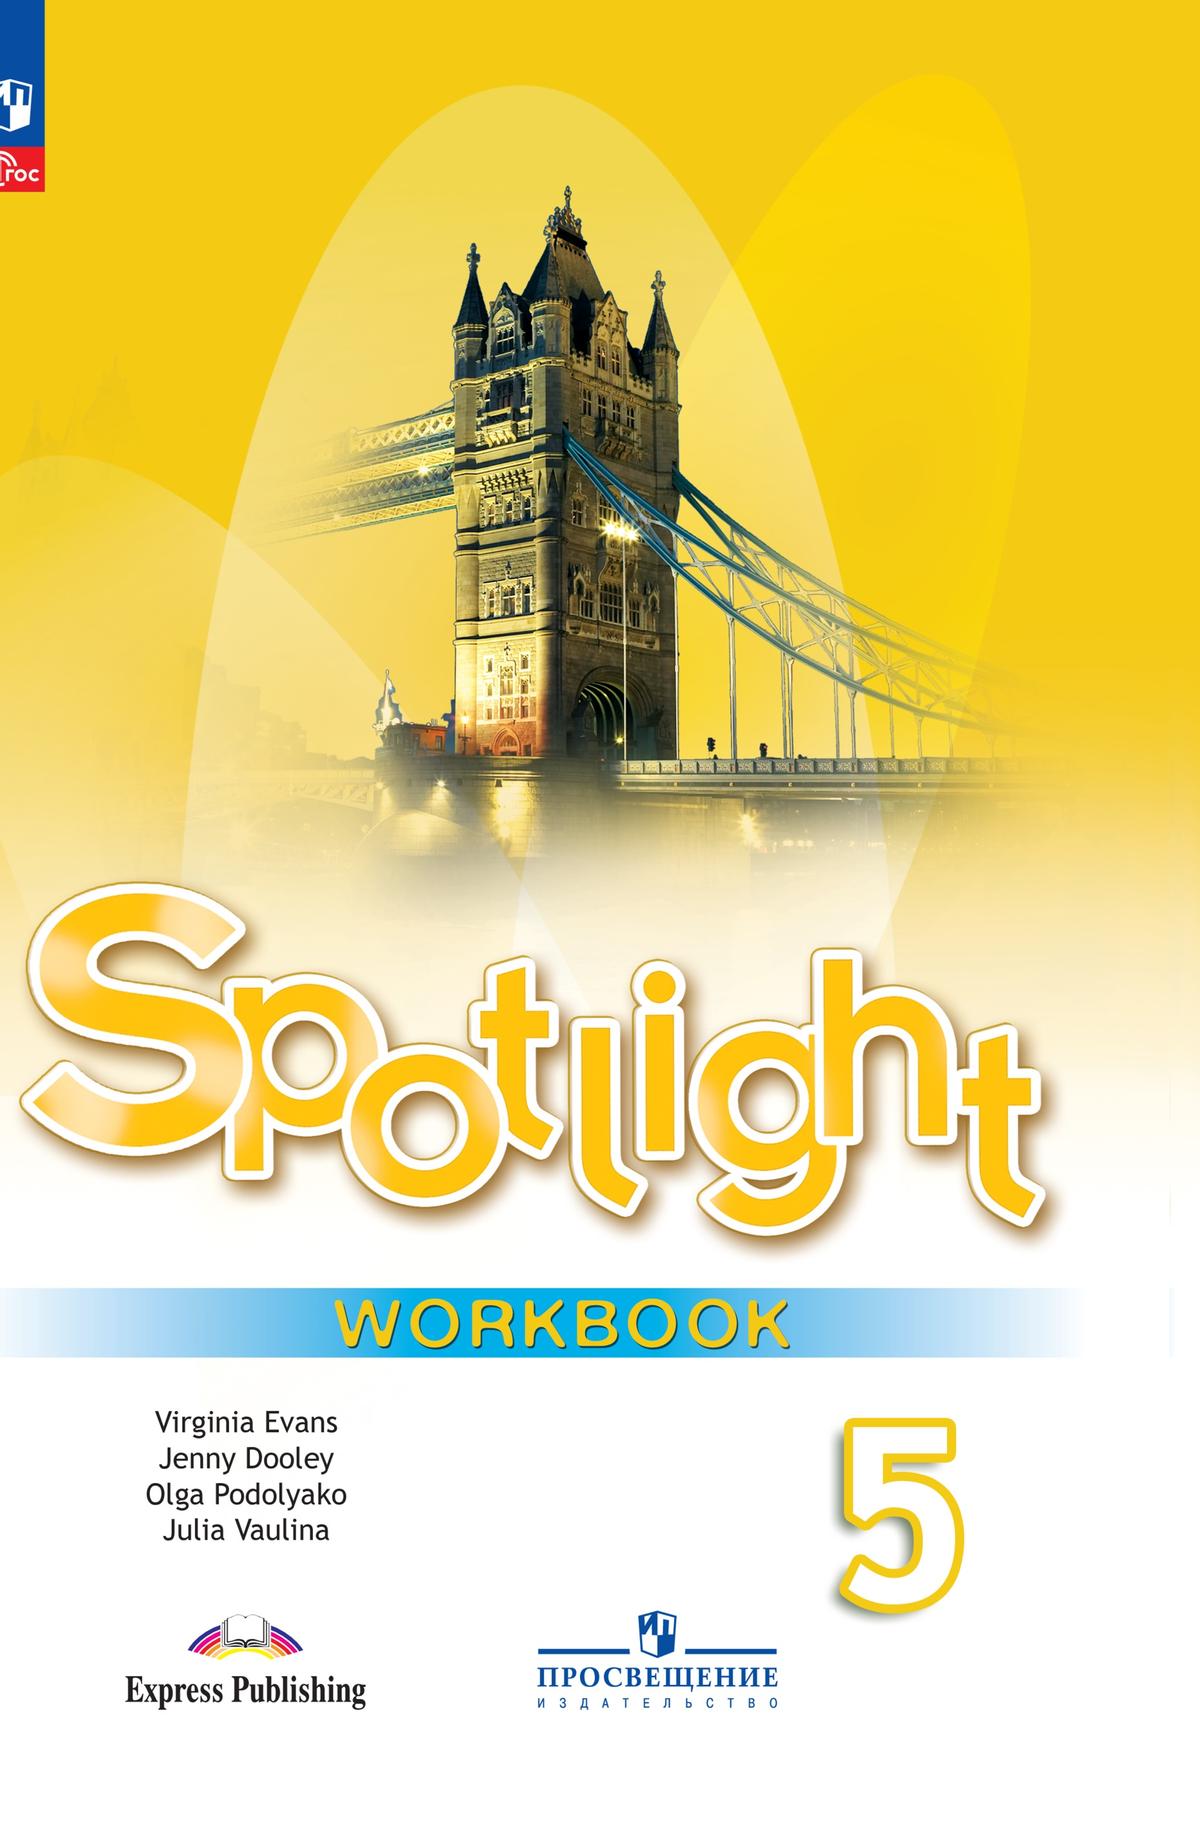 ГДЗ Spotlight 6 класс английский язык, рабочая тетрадь Ваулина, Дули.